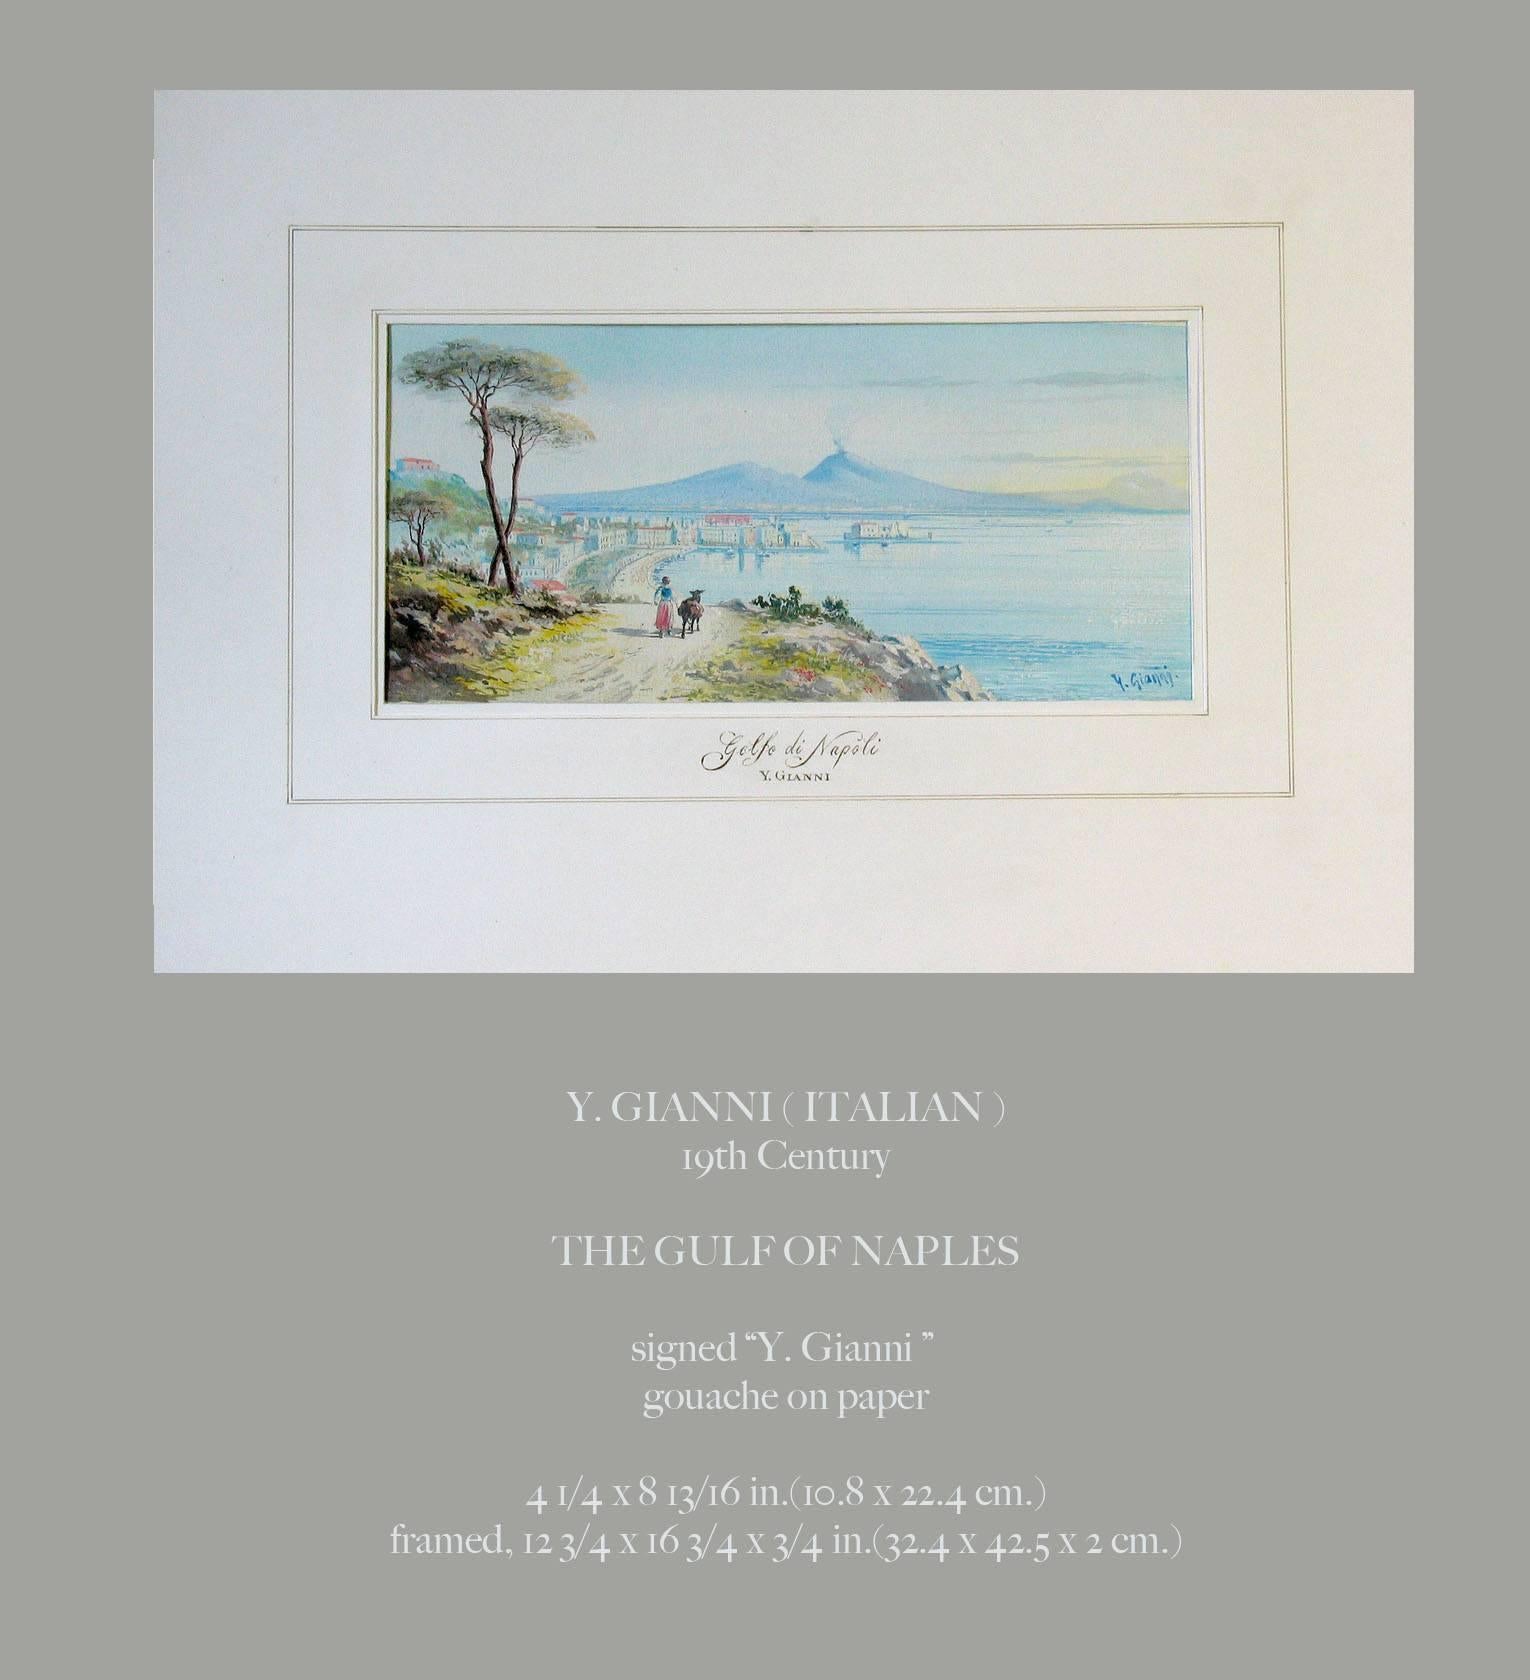 Y. Gianni (italien) Le golfe de Naples, XIXe siècle. Une belle gouche sur papier signée 